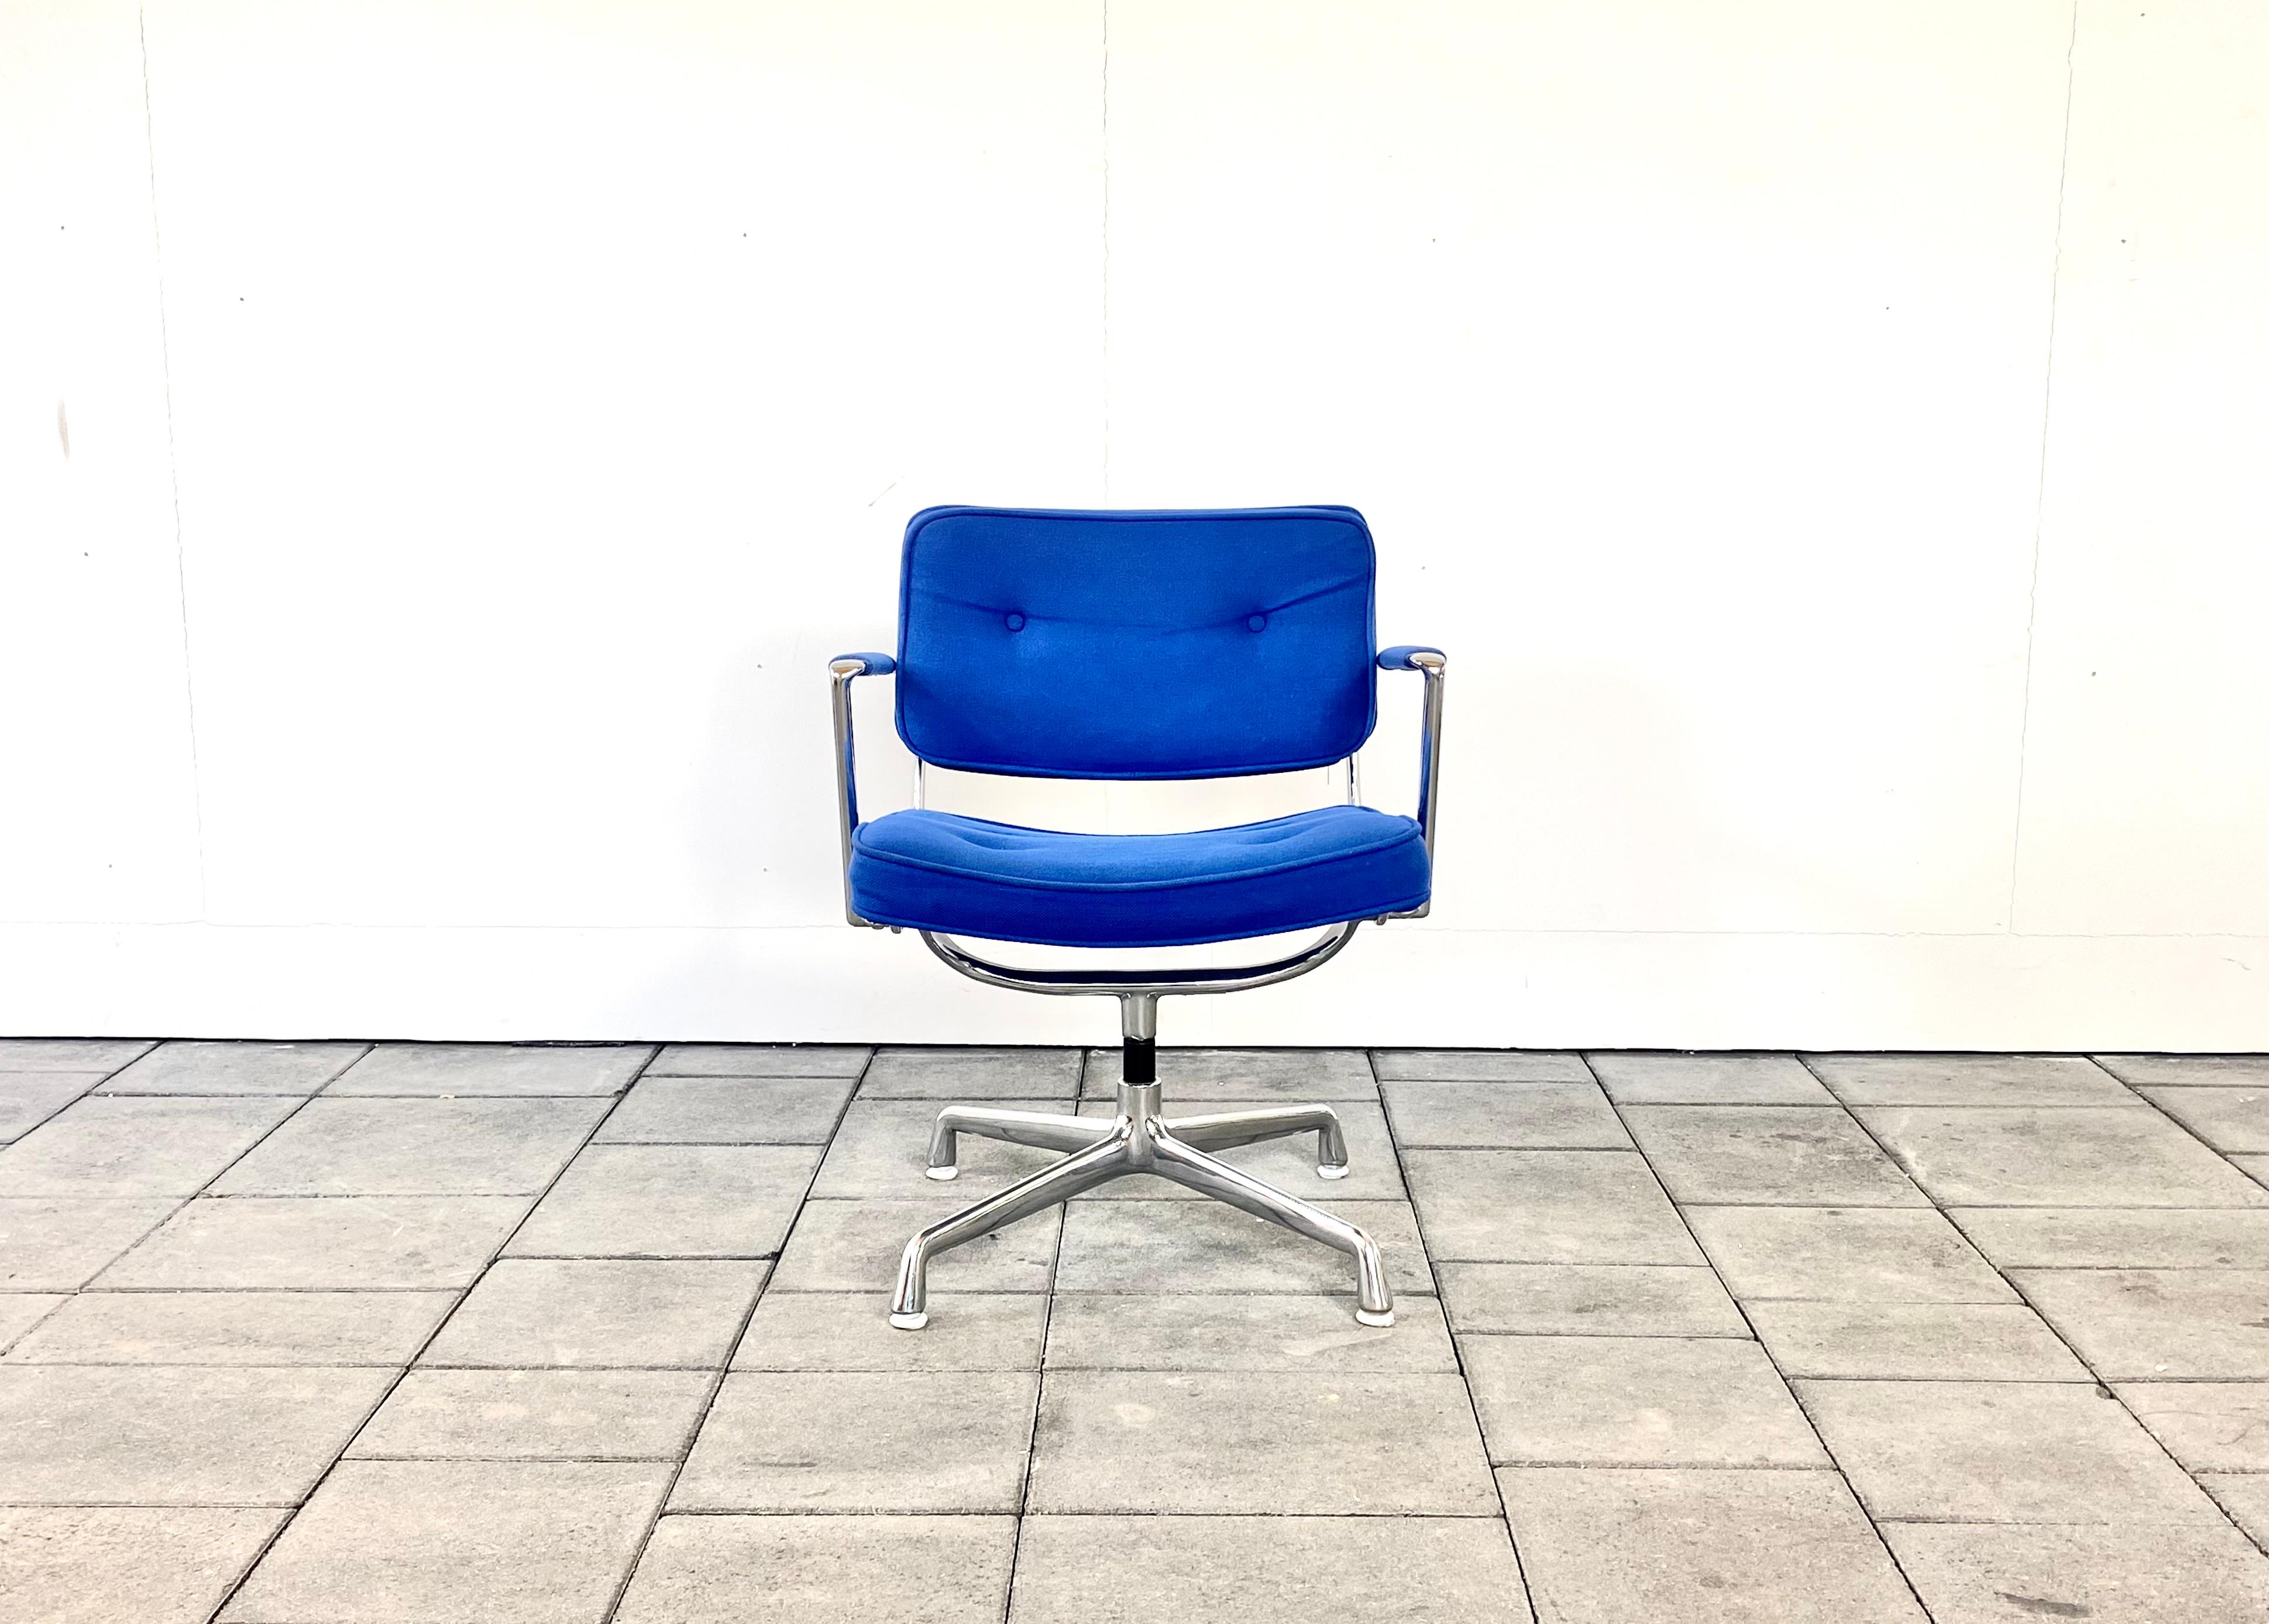 rare chaise Herman Miller ES102 Intermediate Desk conçue par Charles & Ray Eames

Rembourrage en tissu bleu Hopsack, avec pièces en aluminium chromé, équipé de la fonction shivel.

La chaise est en très bon état vintage avec des signes d'utilisation